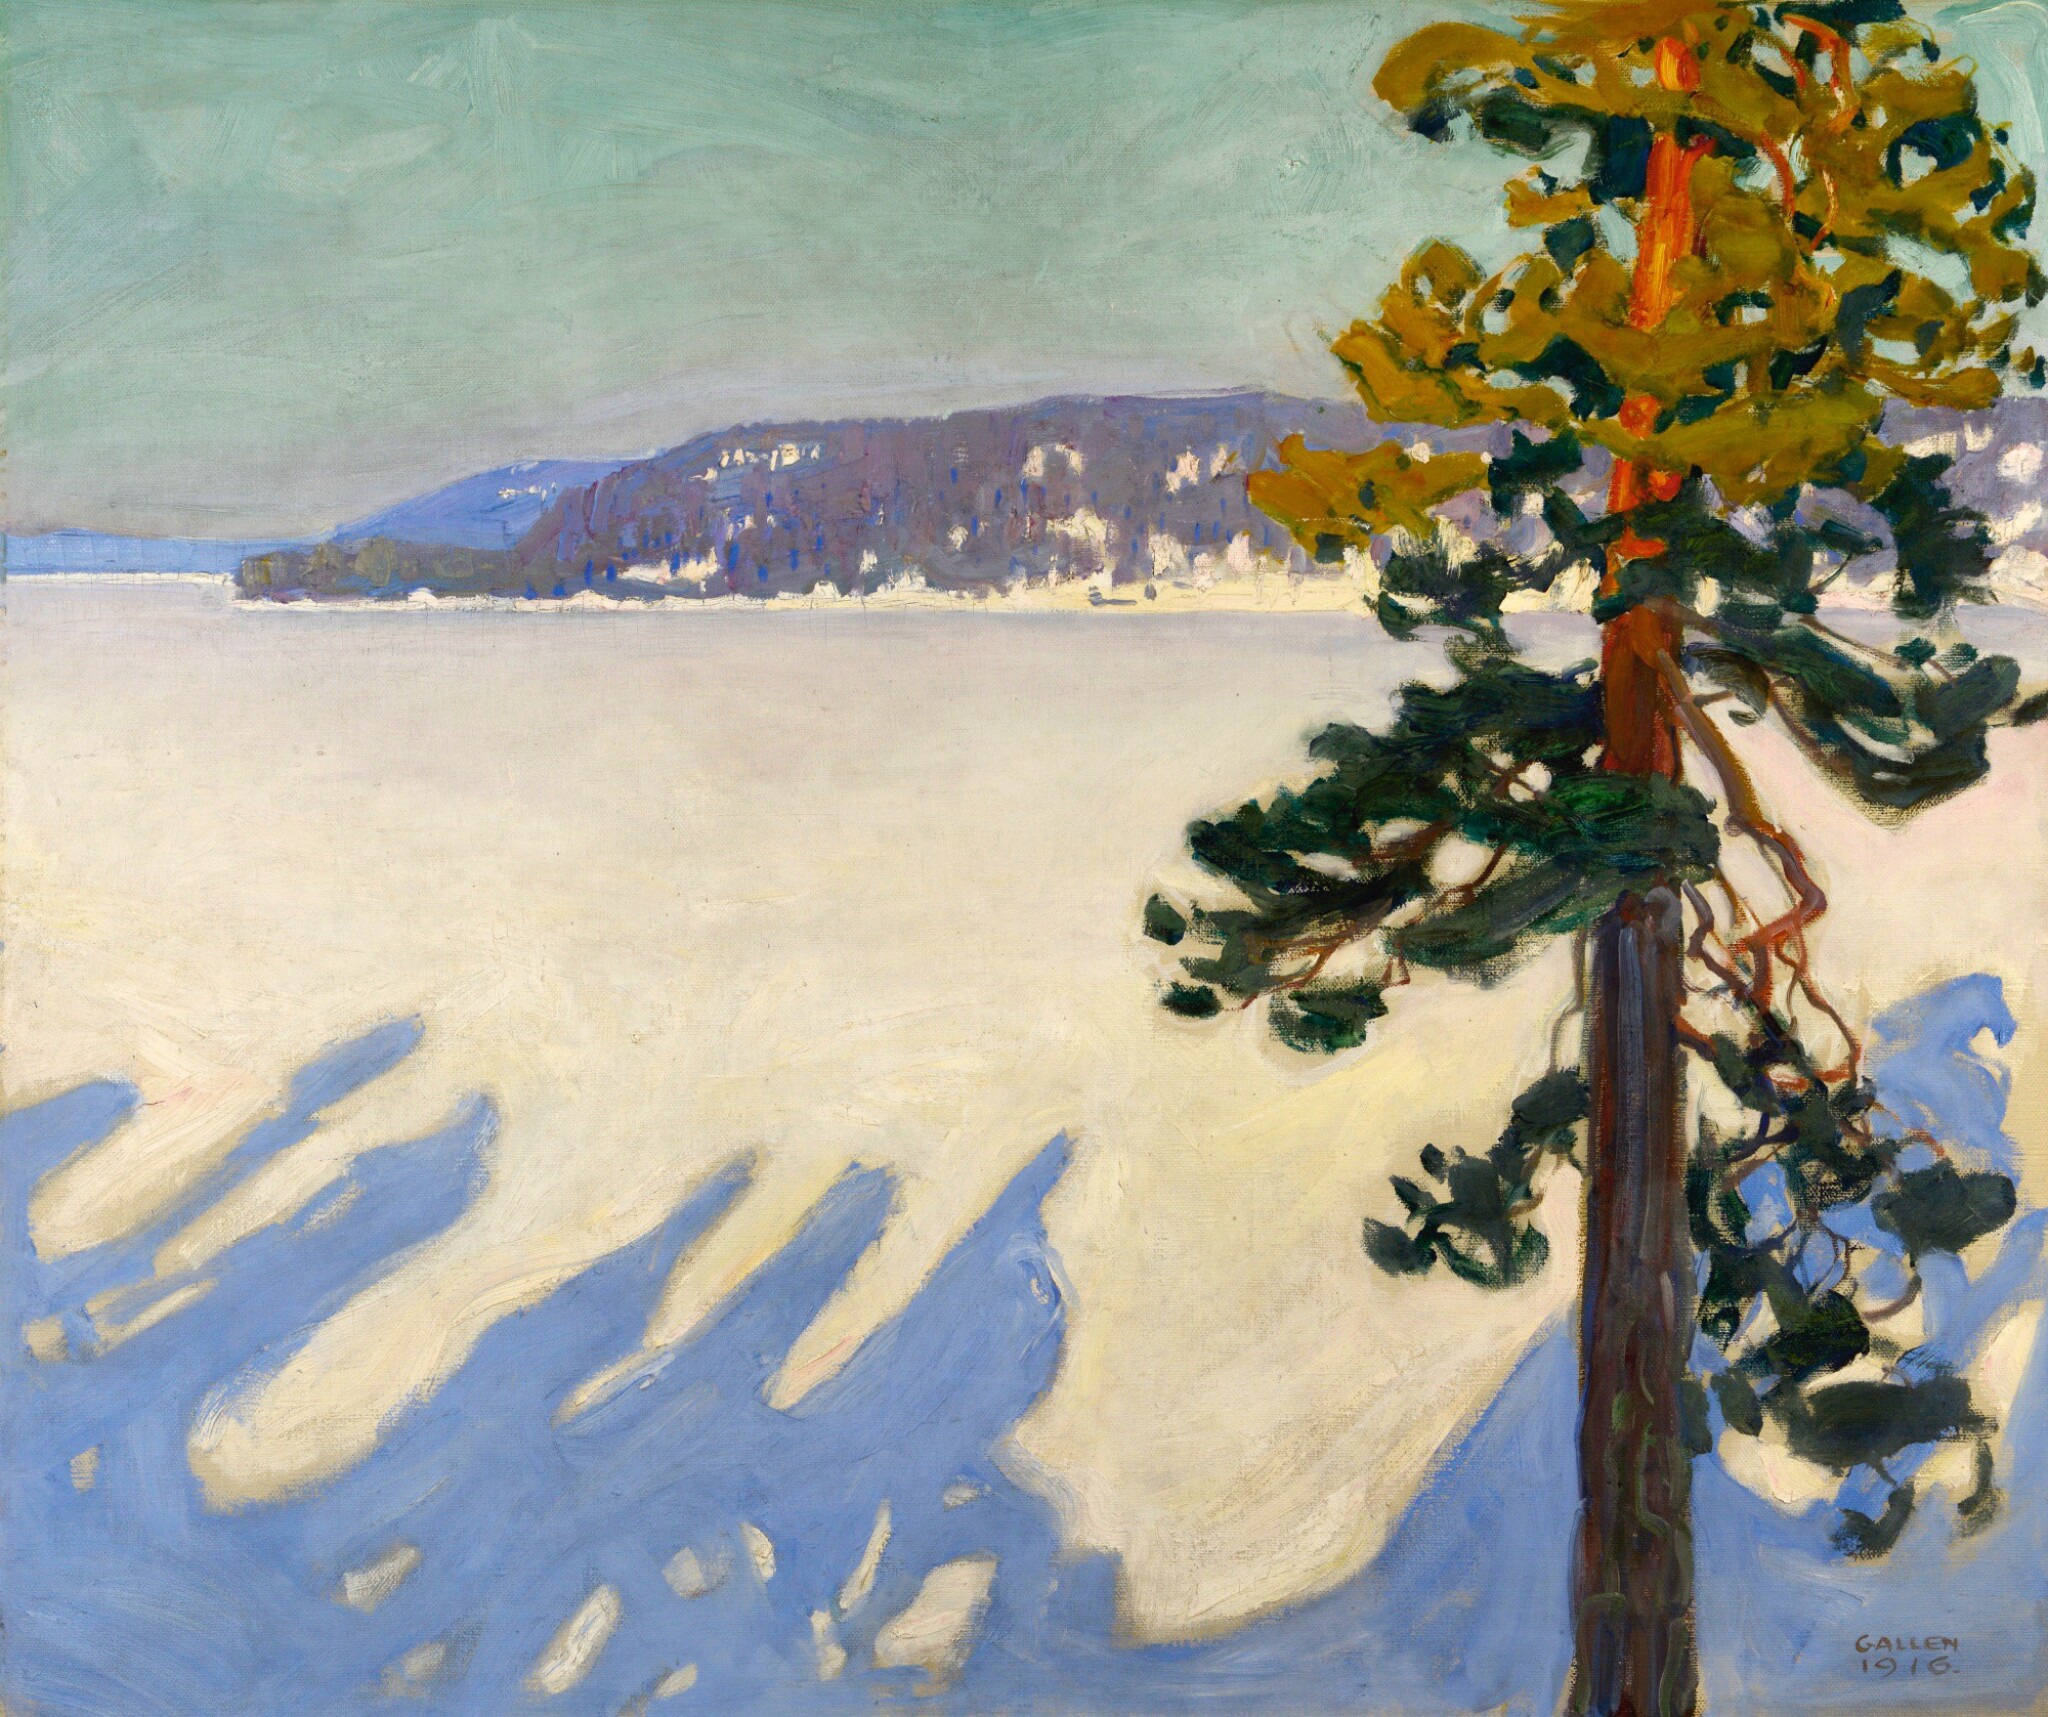 겨울의 루오베시 호수 (Lake Ruovesi in Winter) by Akseli Gallen-Kallela - 1916 - 102 x 119.5 cm 